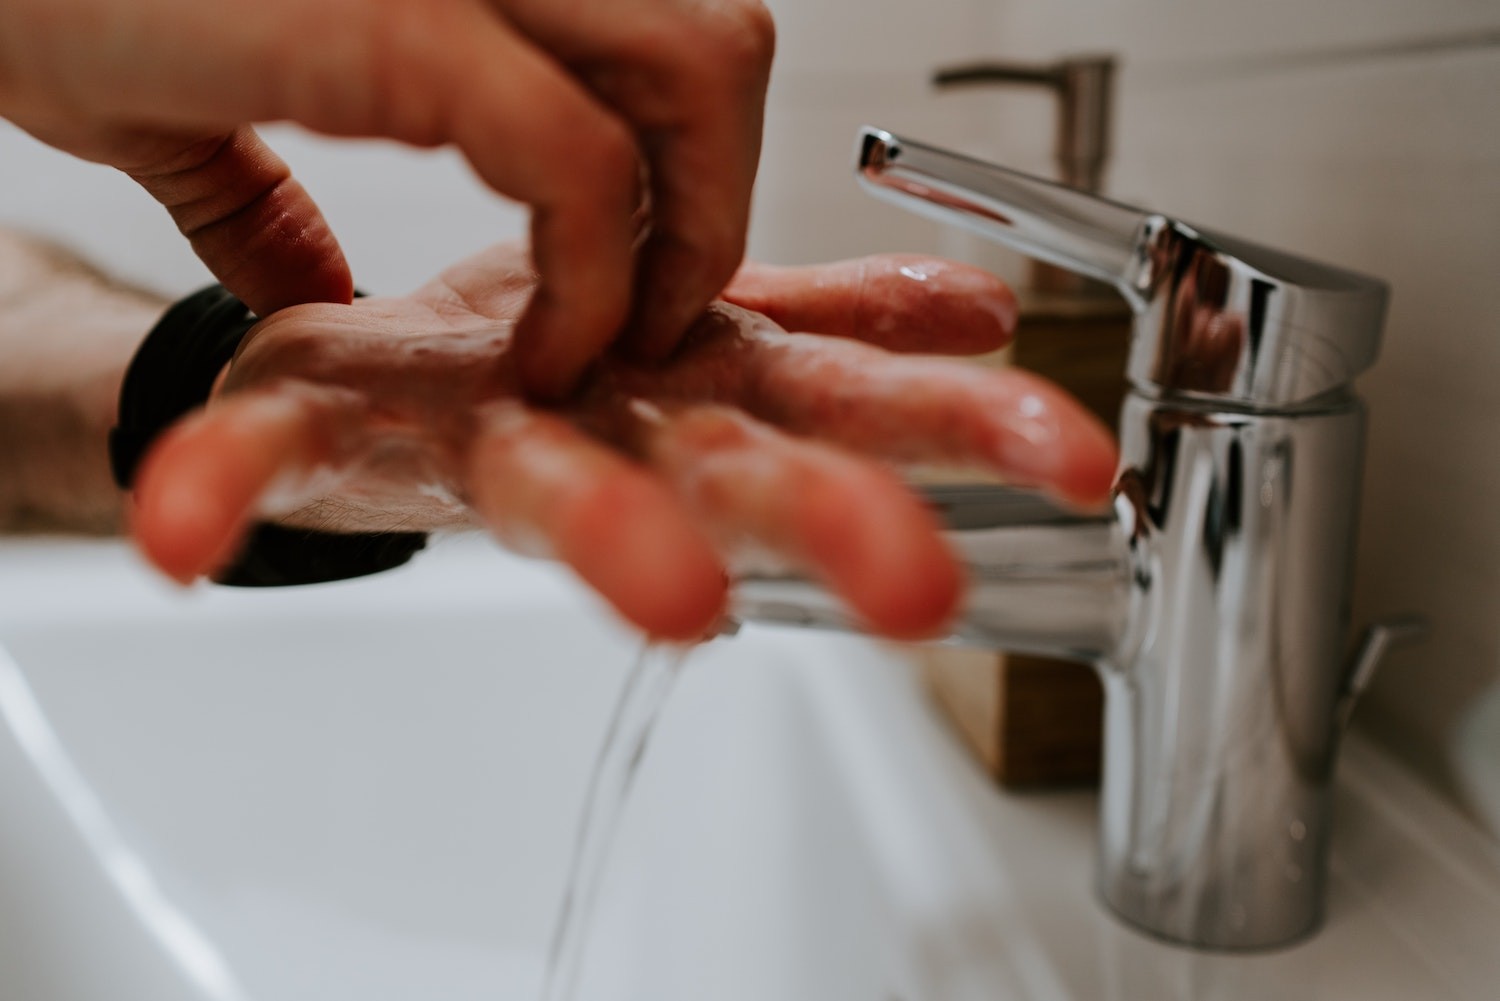 O mais recomendado é lavar as mãos na pia, sem se esquecer de higienizar corretamente dedos e unhas (Foto: Unsplash / Claudio Schwarz | @purzlbaum / CreativeCommons)